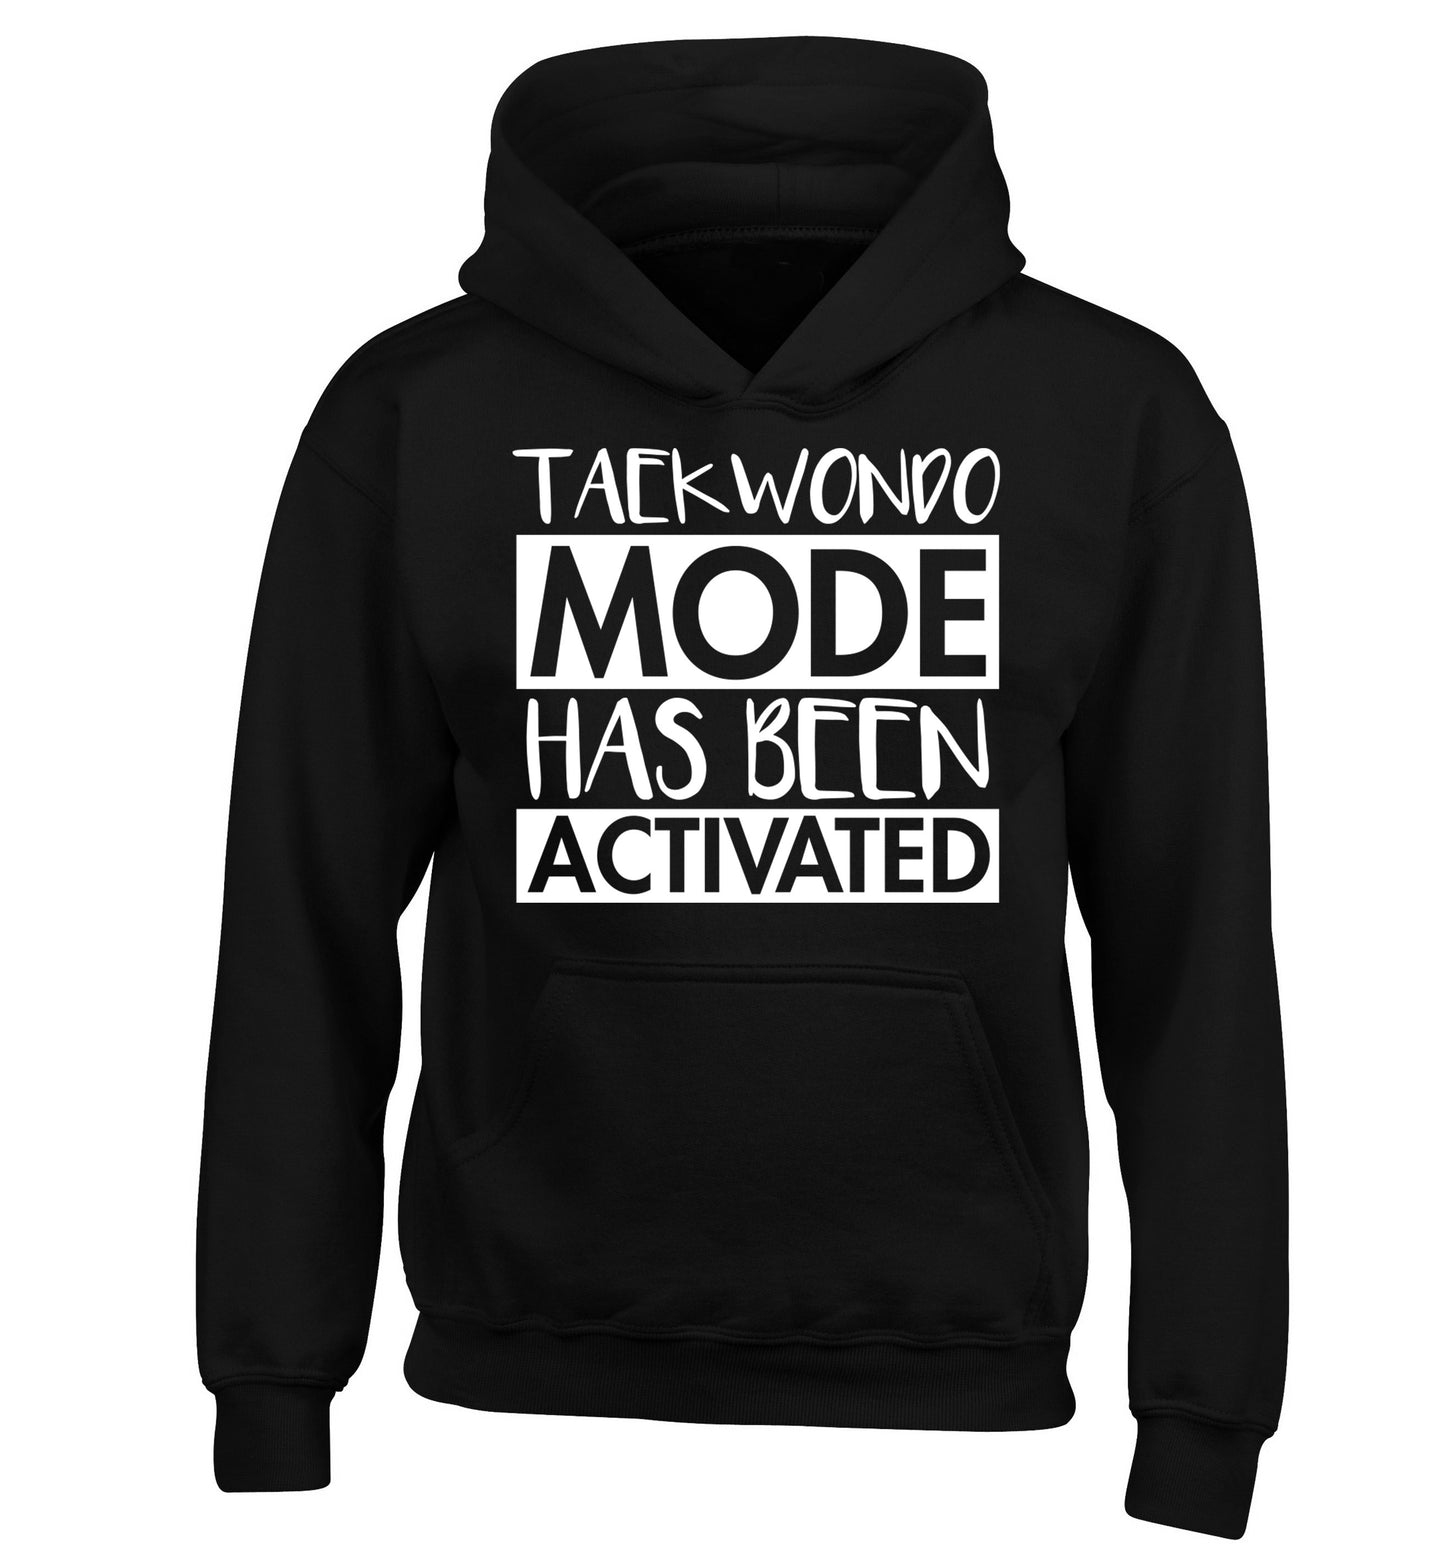 Taekwondo mode activated children's black hoodie 12-14 Years